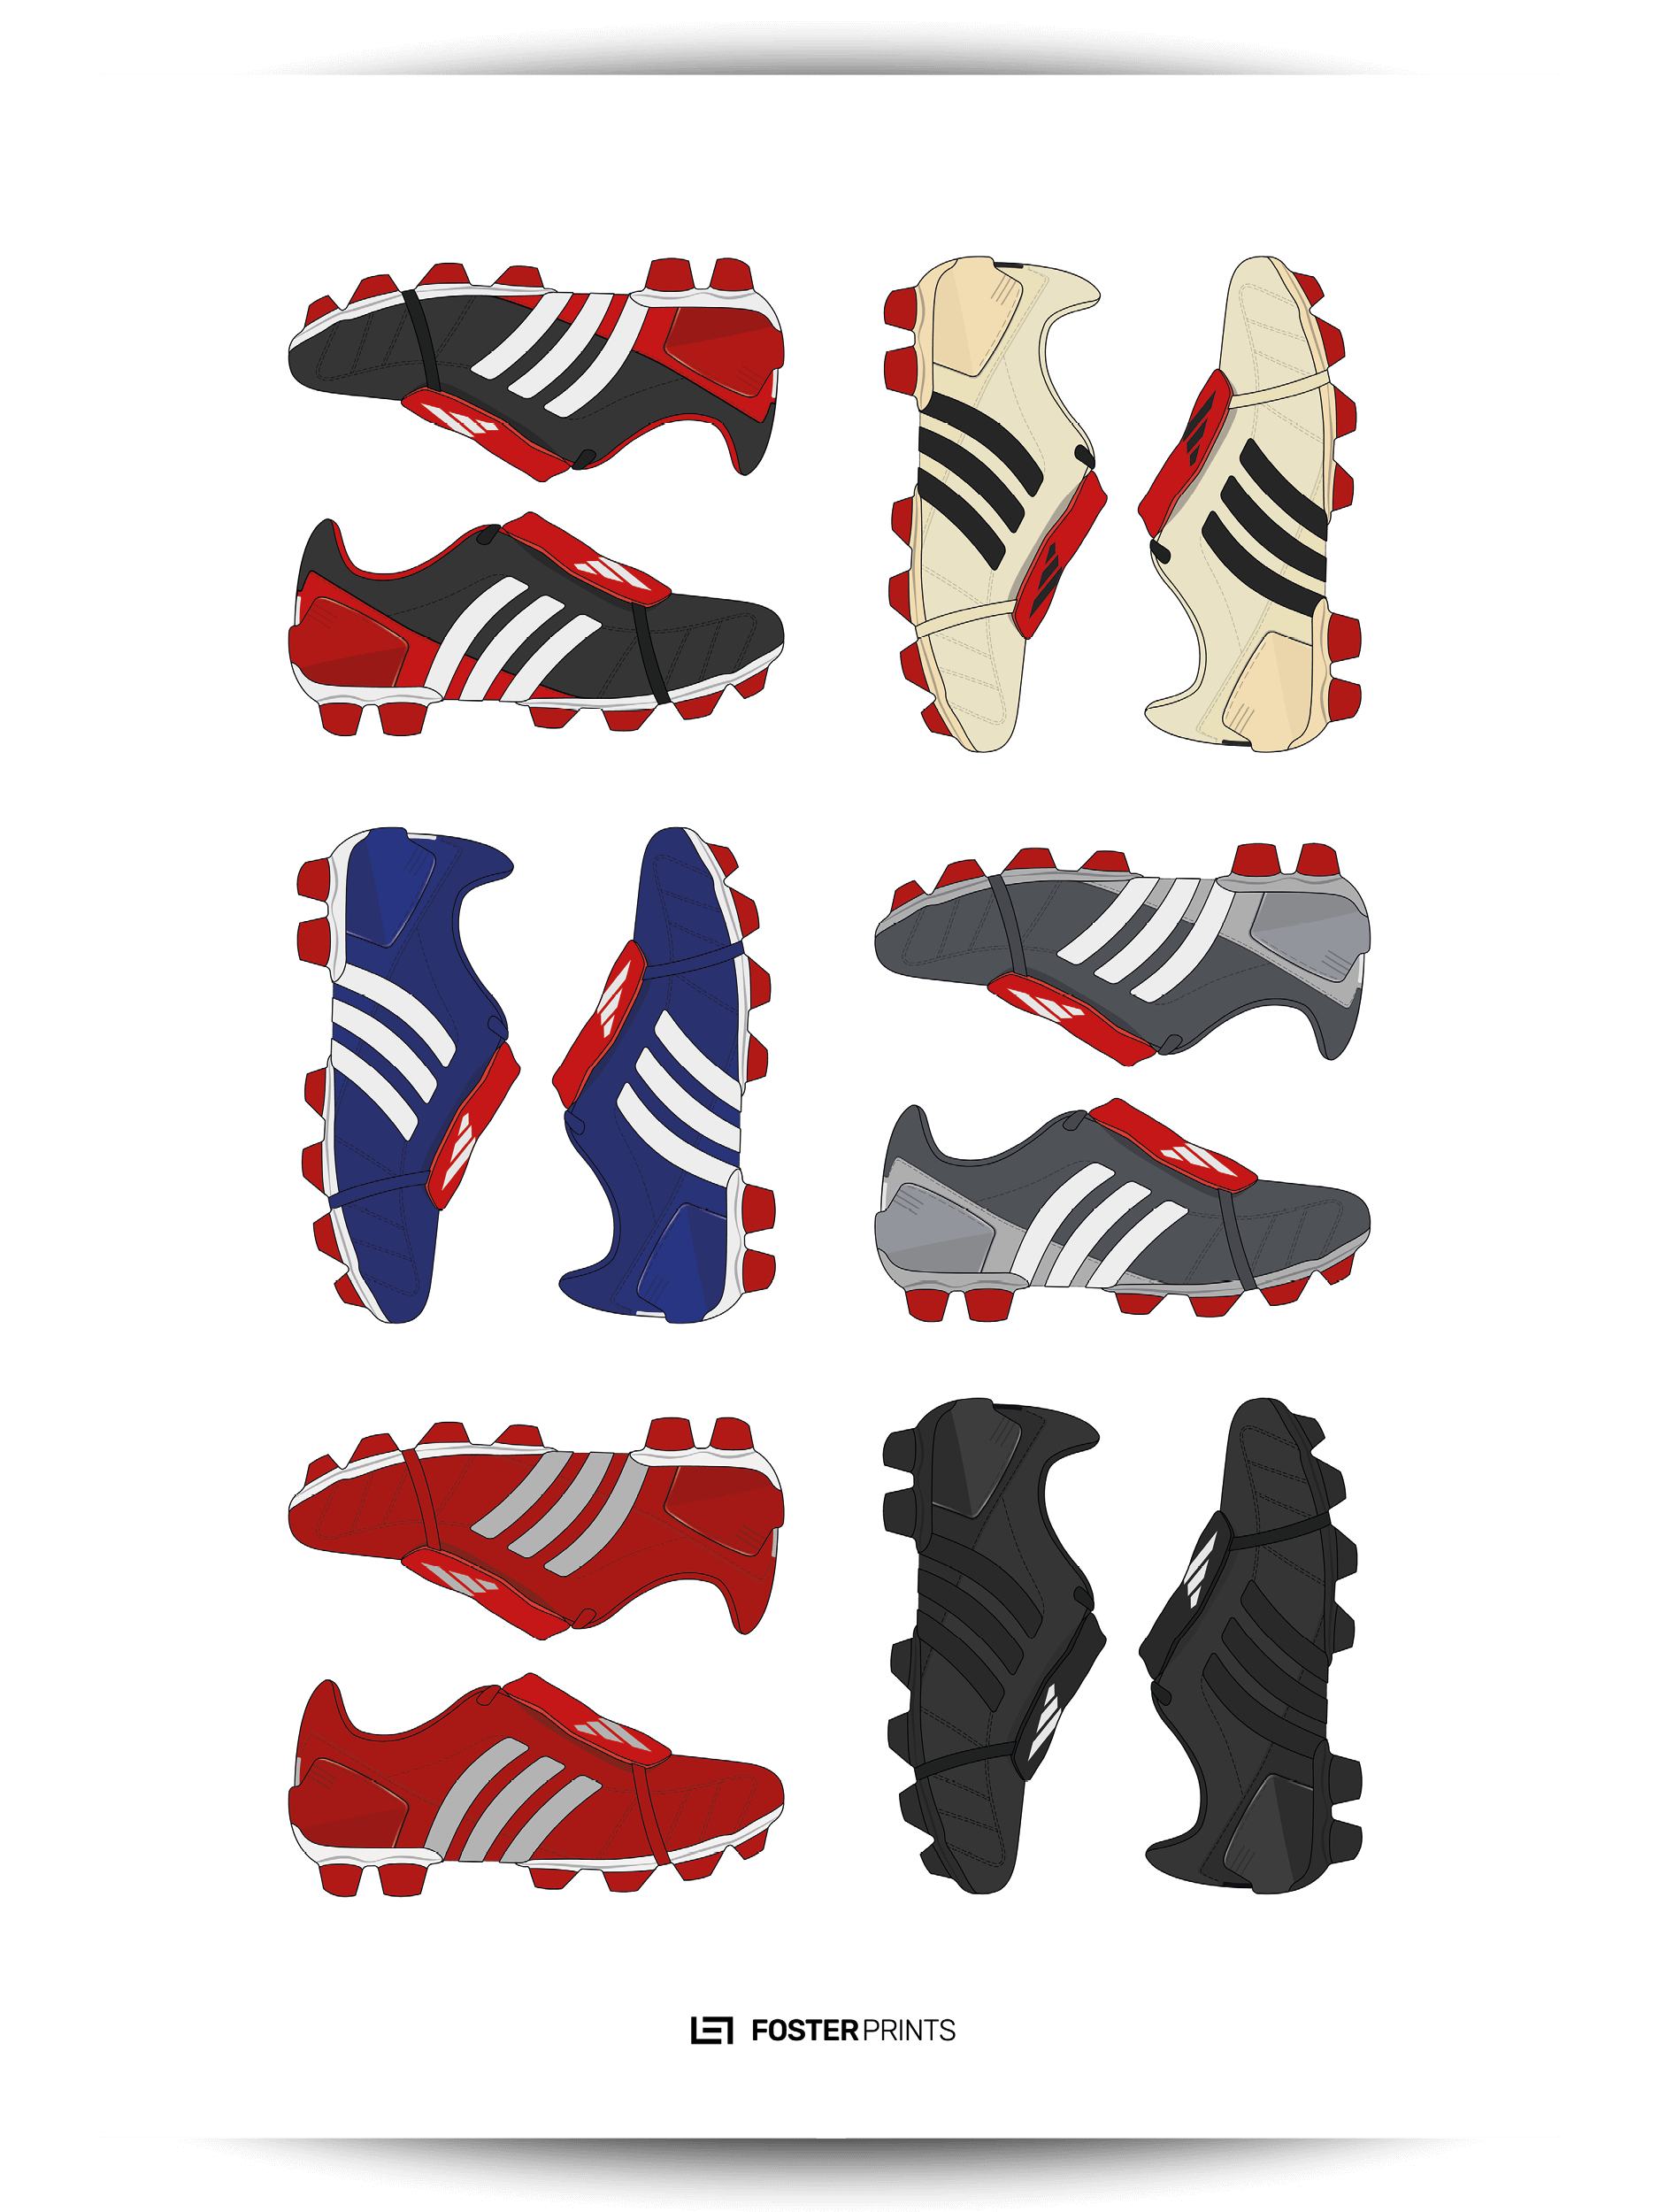 Adidas Predator Mania Collection 